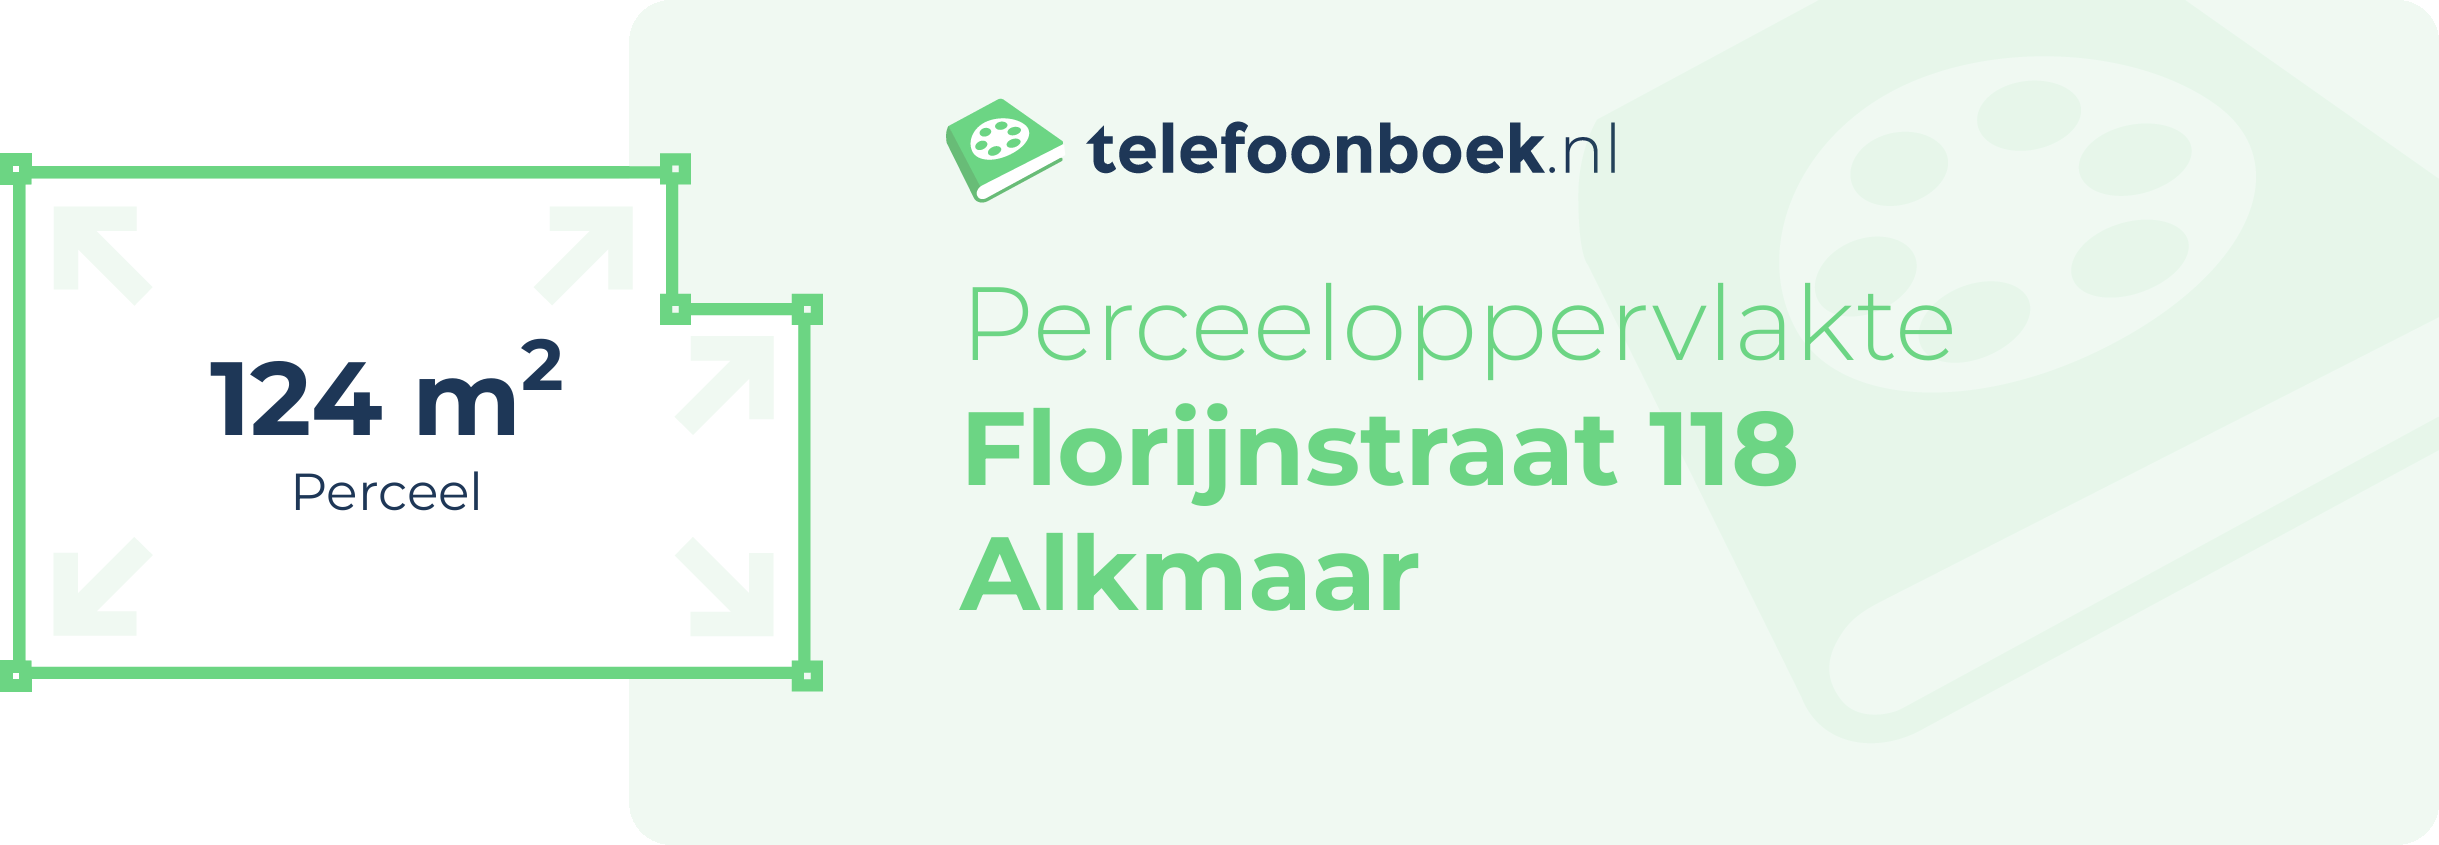 Perceeloppervlakte Florijnstraat 118 Alkmaar